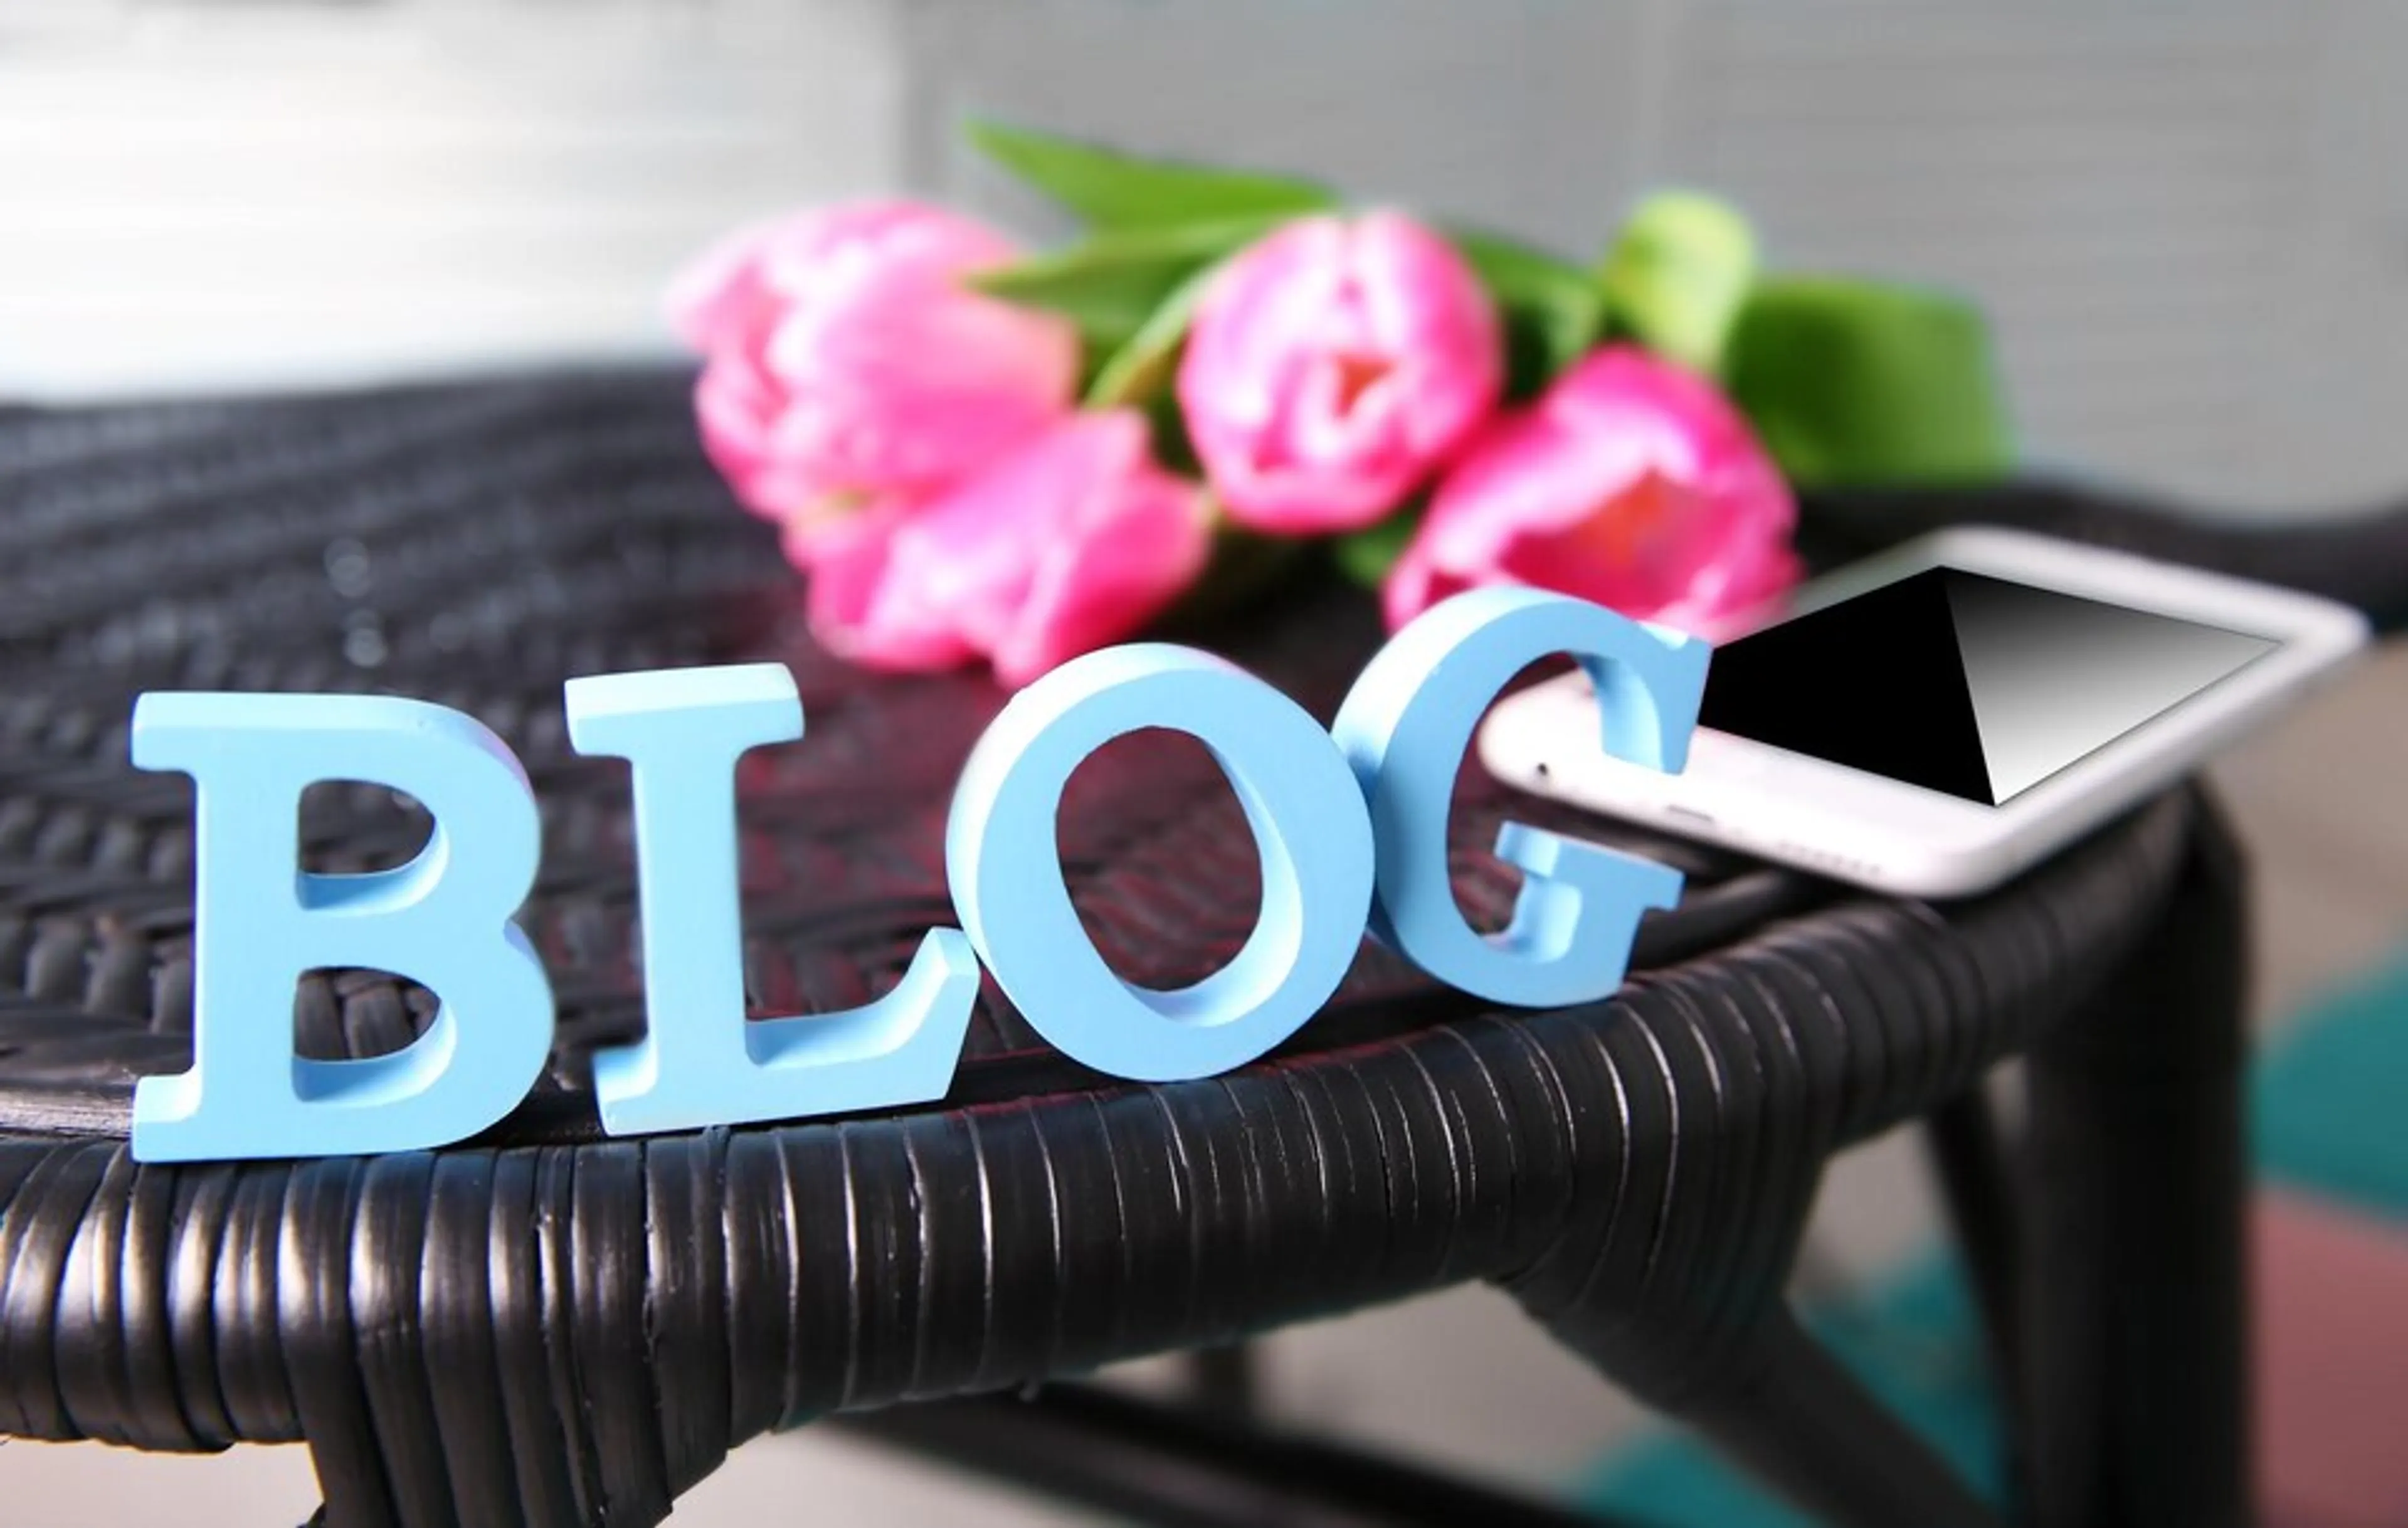 Blog là gì? Cách xây dựng một blog chuyên nghiệp và thu hút độc giả